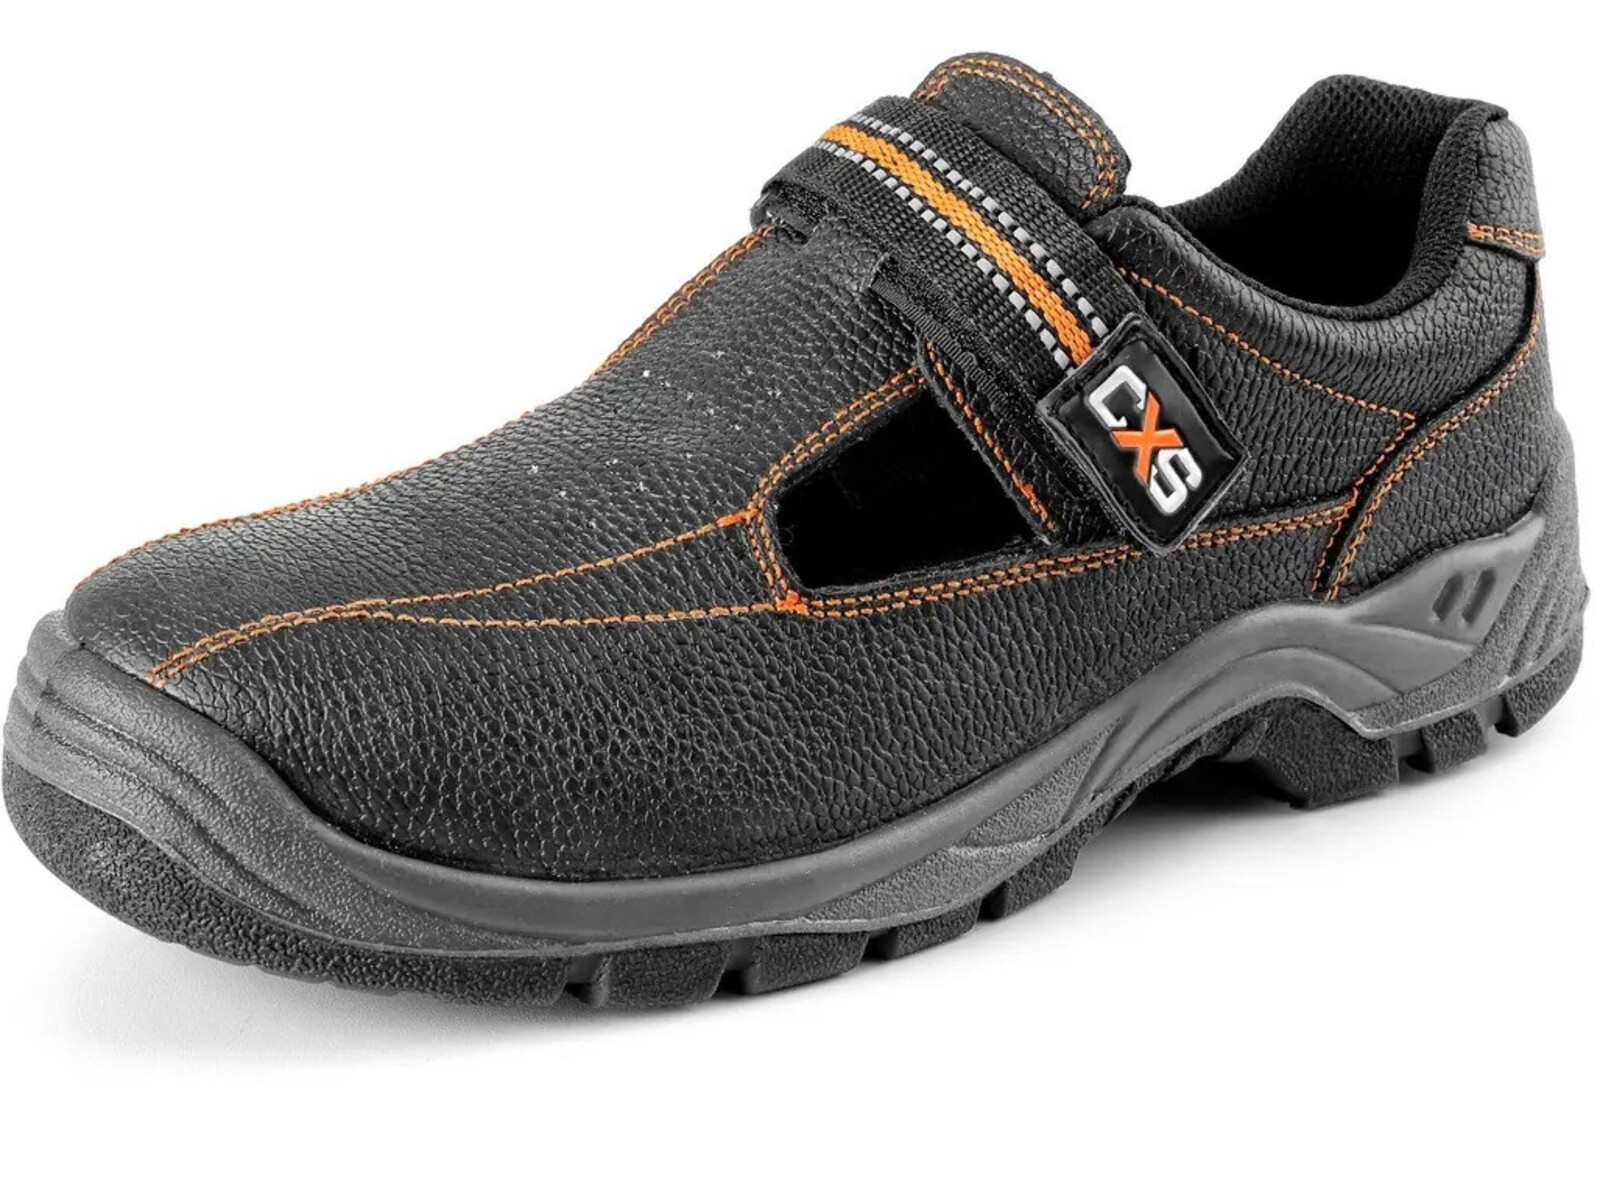 Pracovné sandále CXS Stone Nefrit O1 FO SRC - veľkosť: 38, farba: čierna/oranžová